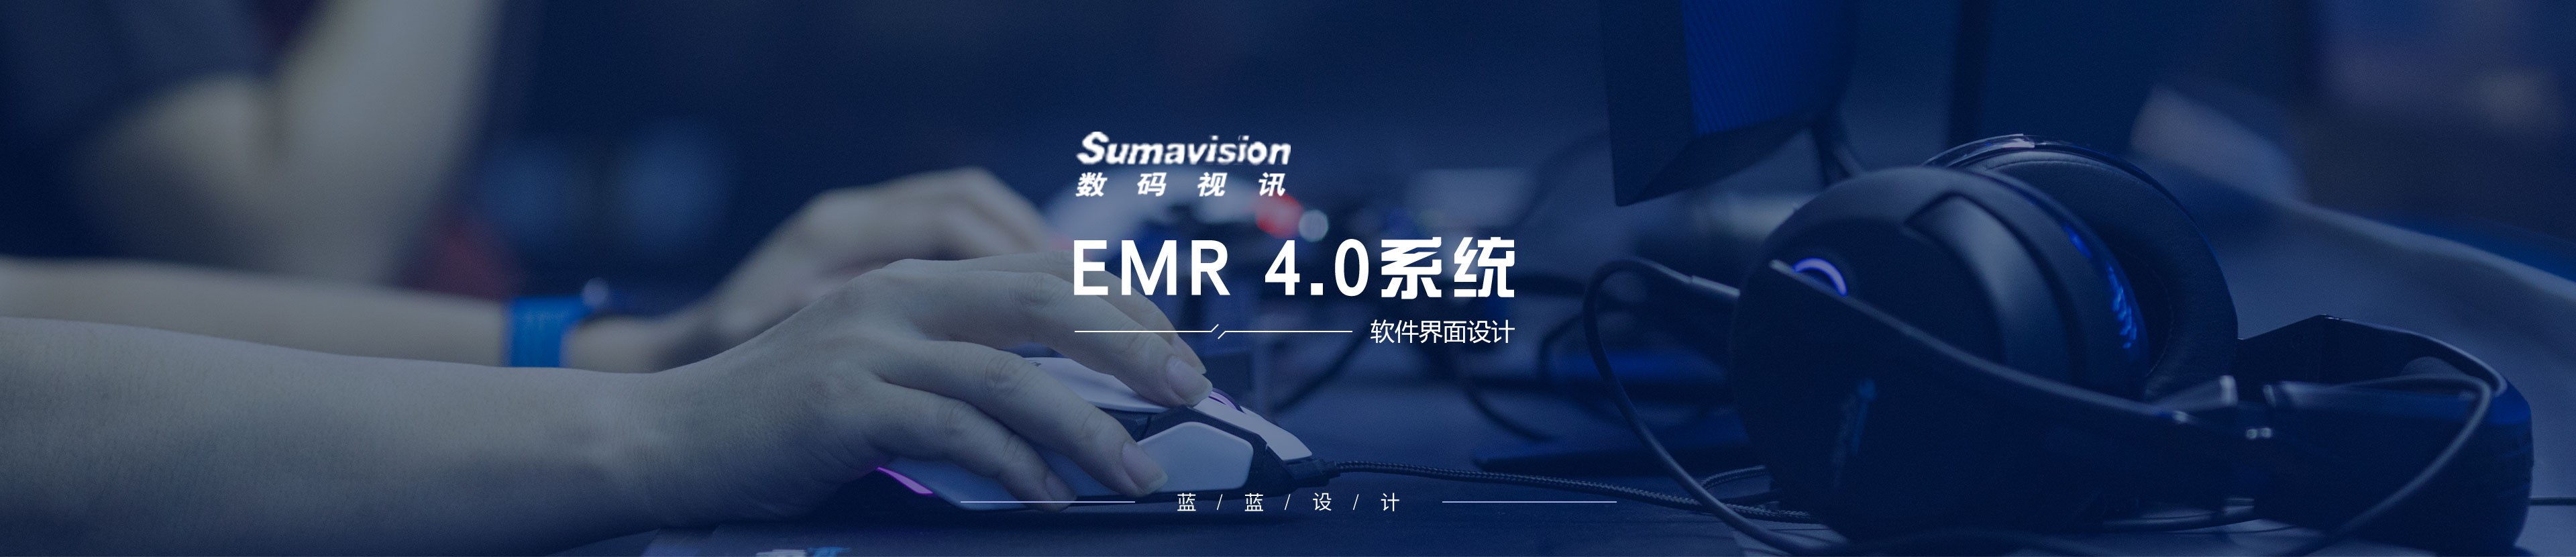 数码视讯EMR 4.0系统界面设计